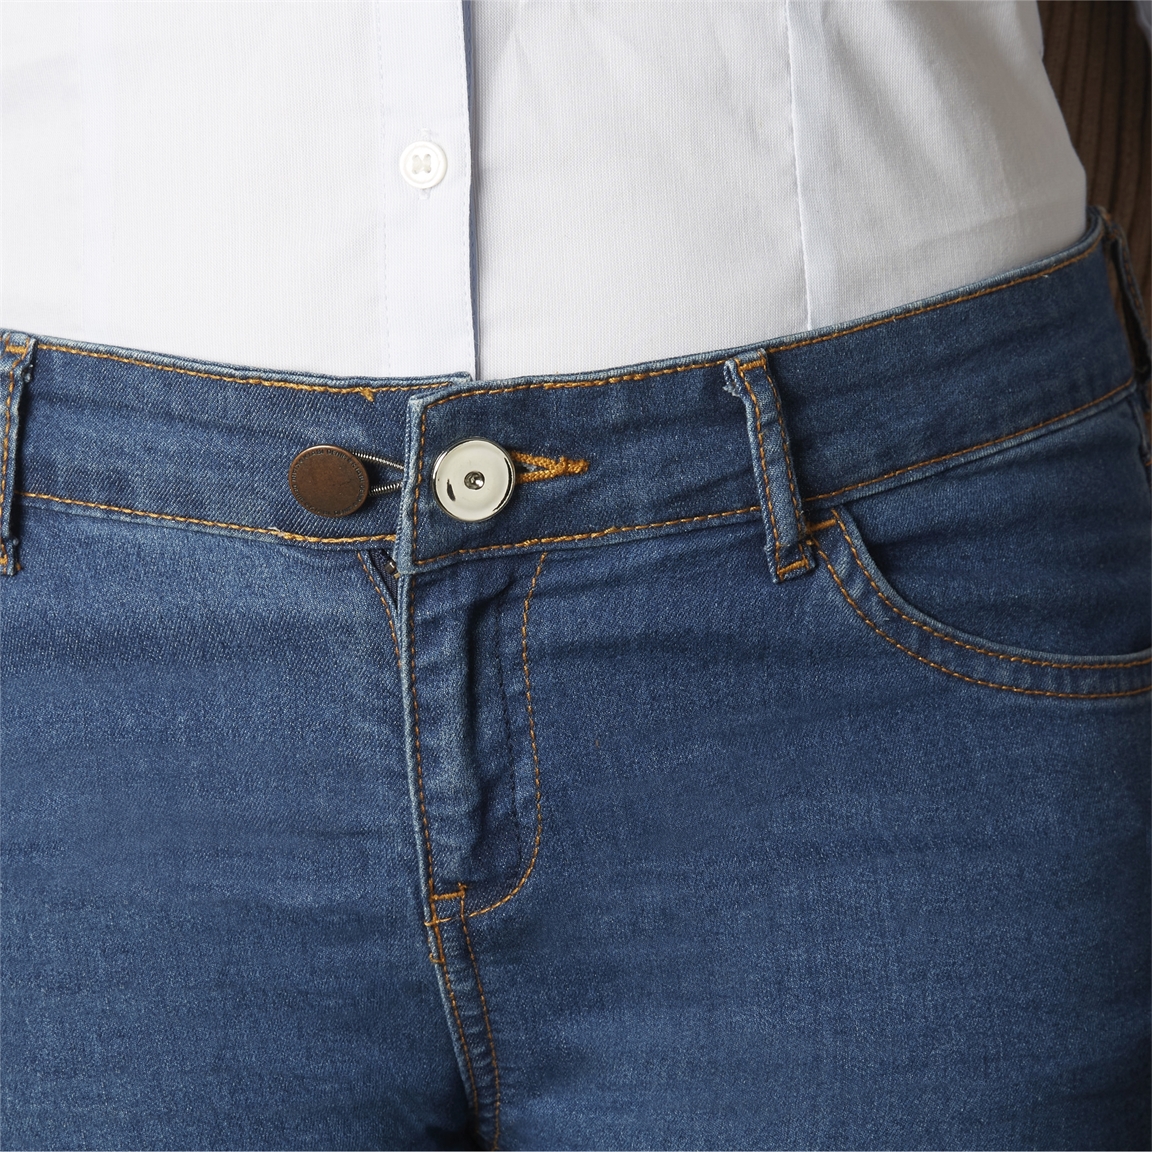 Rallonges Boutons Jeans 70 x 35mm (Blister de 3 pieces) - BOUTONS -  PRESSIONS - AGRAFES/Rallonge Boutons - Mercerie Baptiste